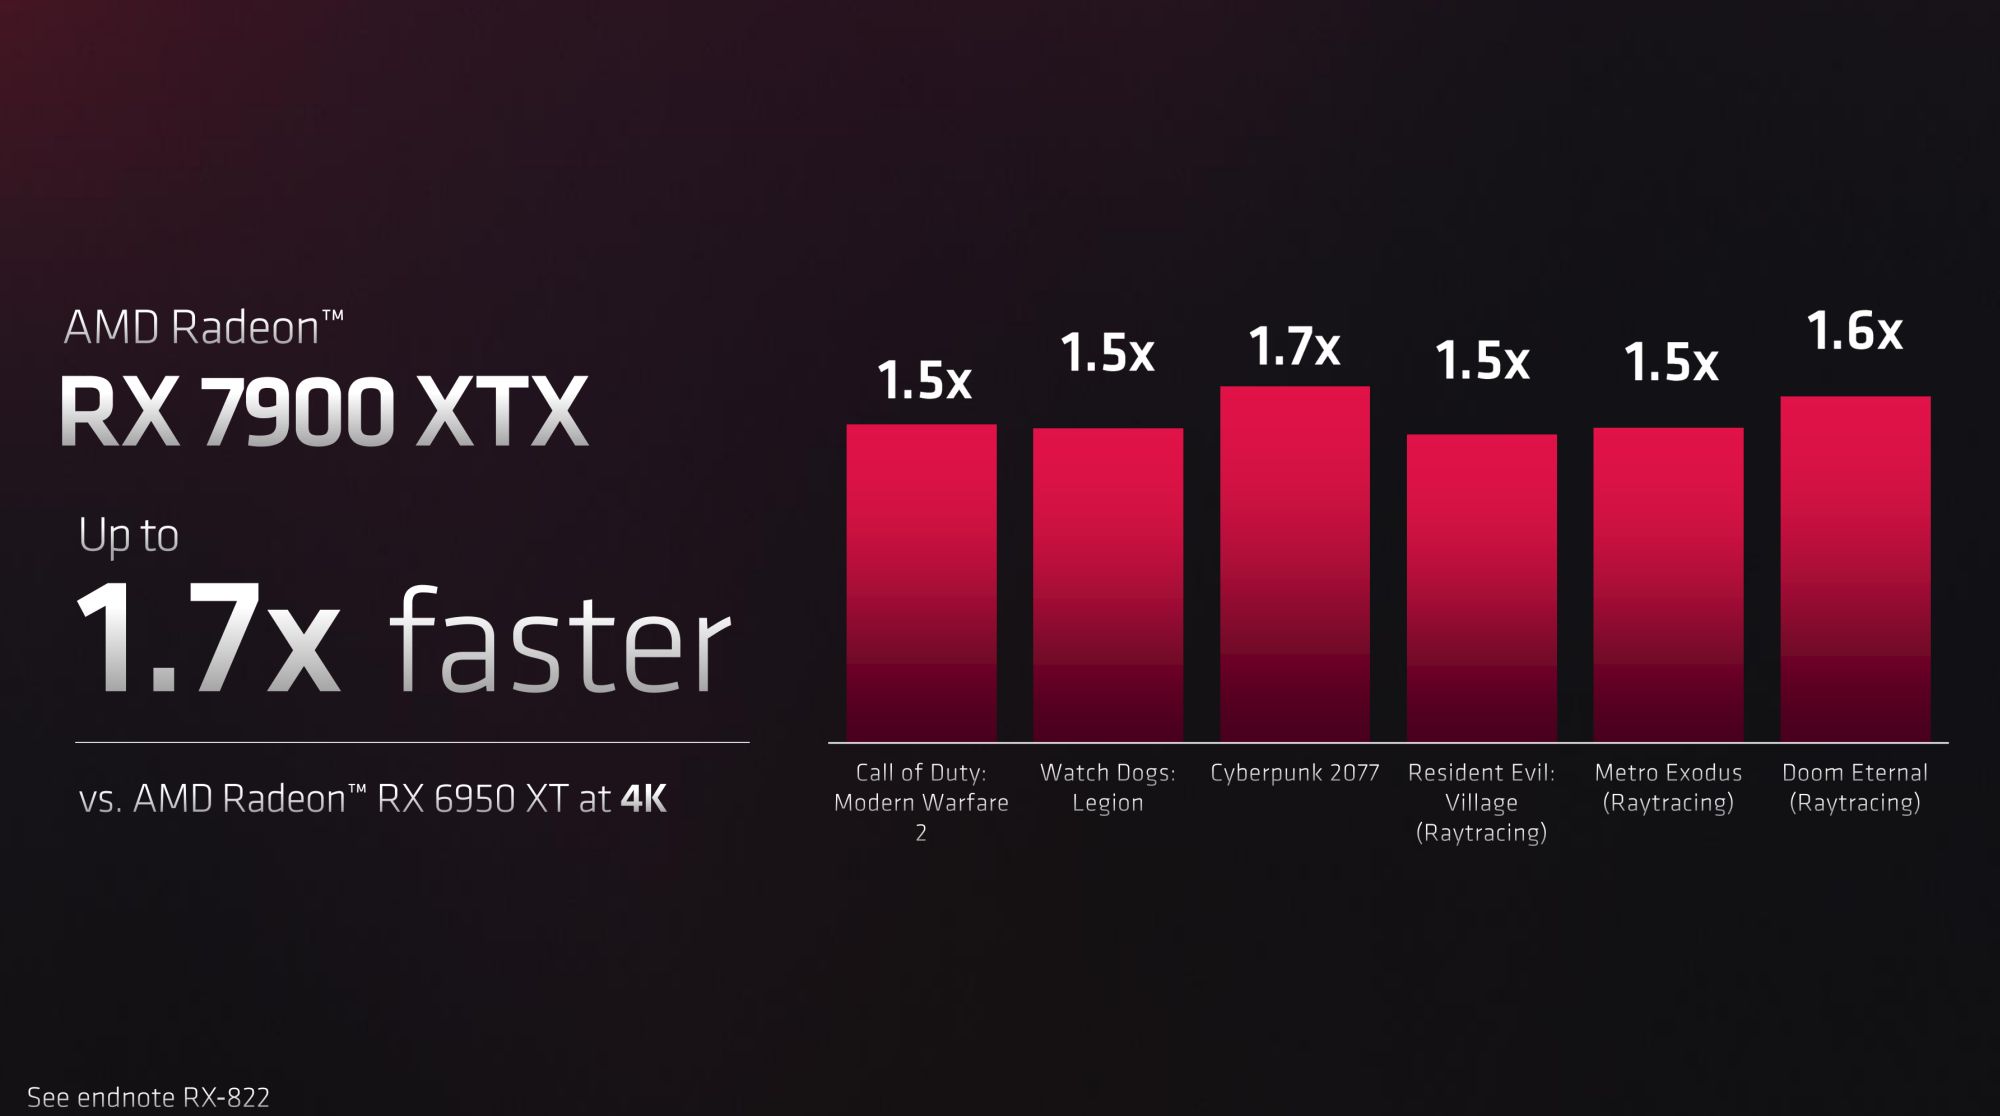 AMD Navi 31 Radeon RX 7900 XTX and XT Unboxing